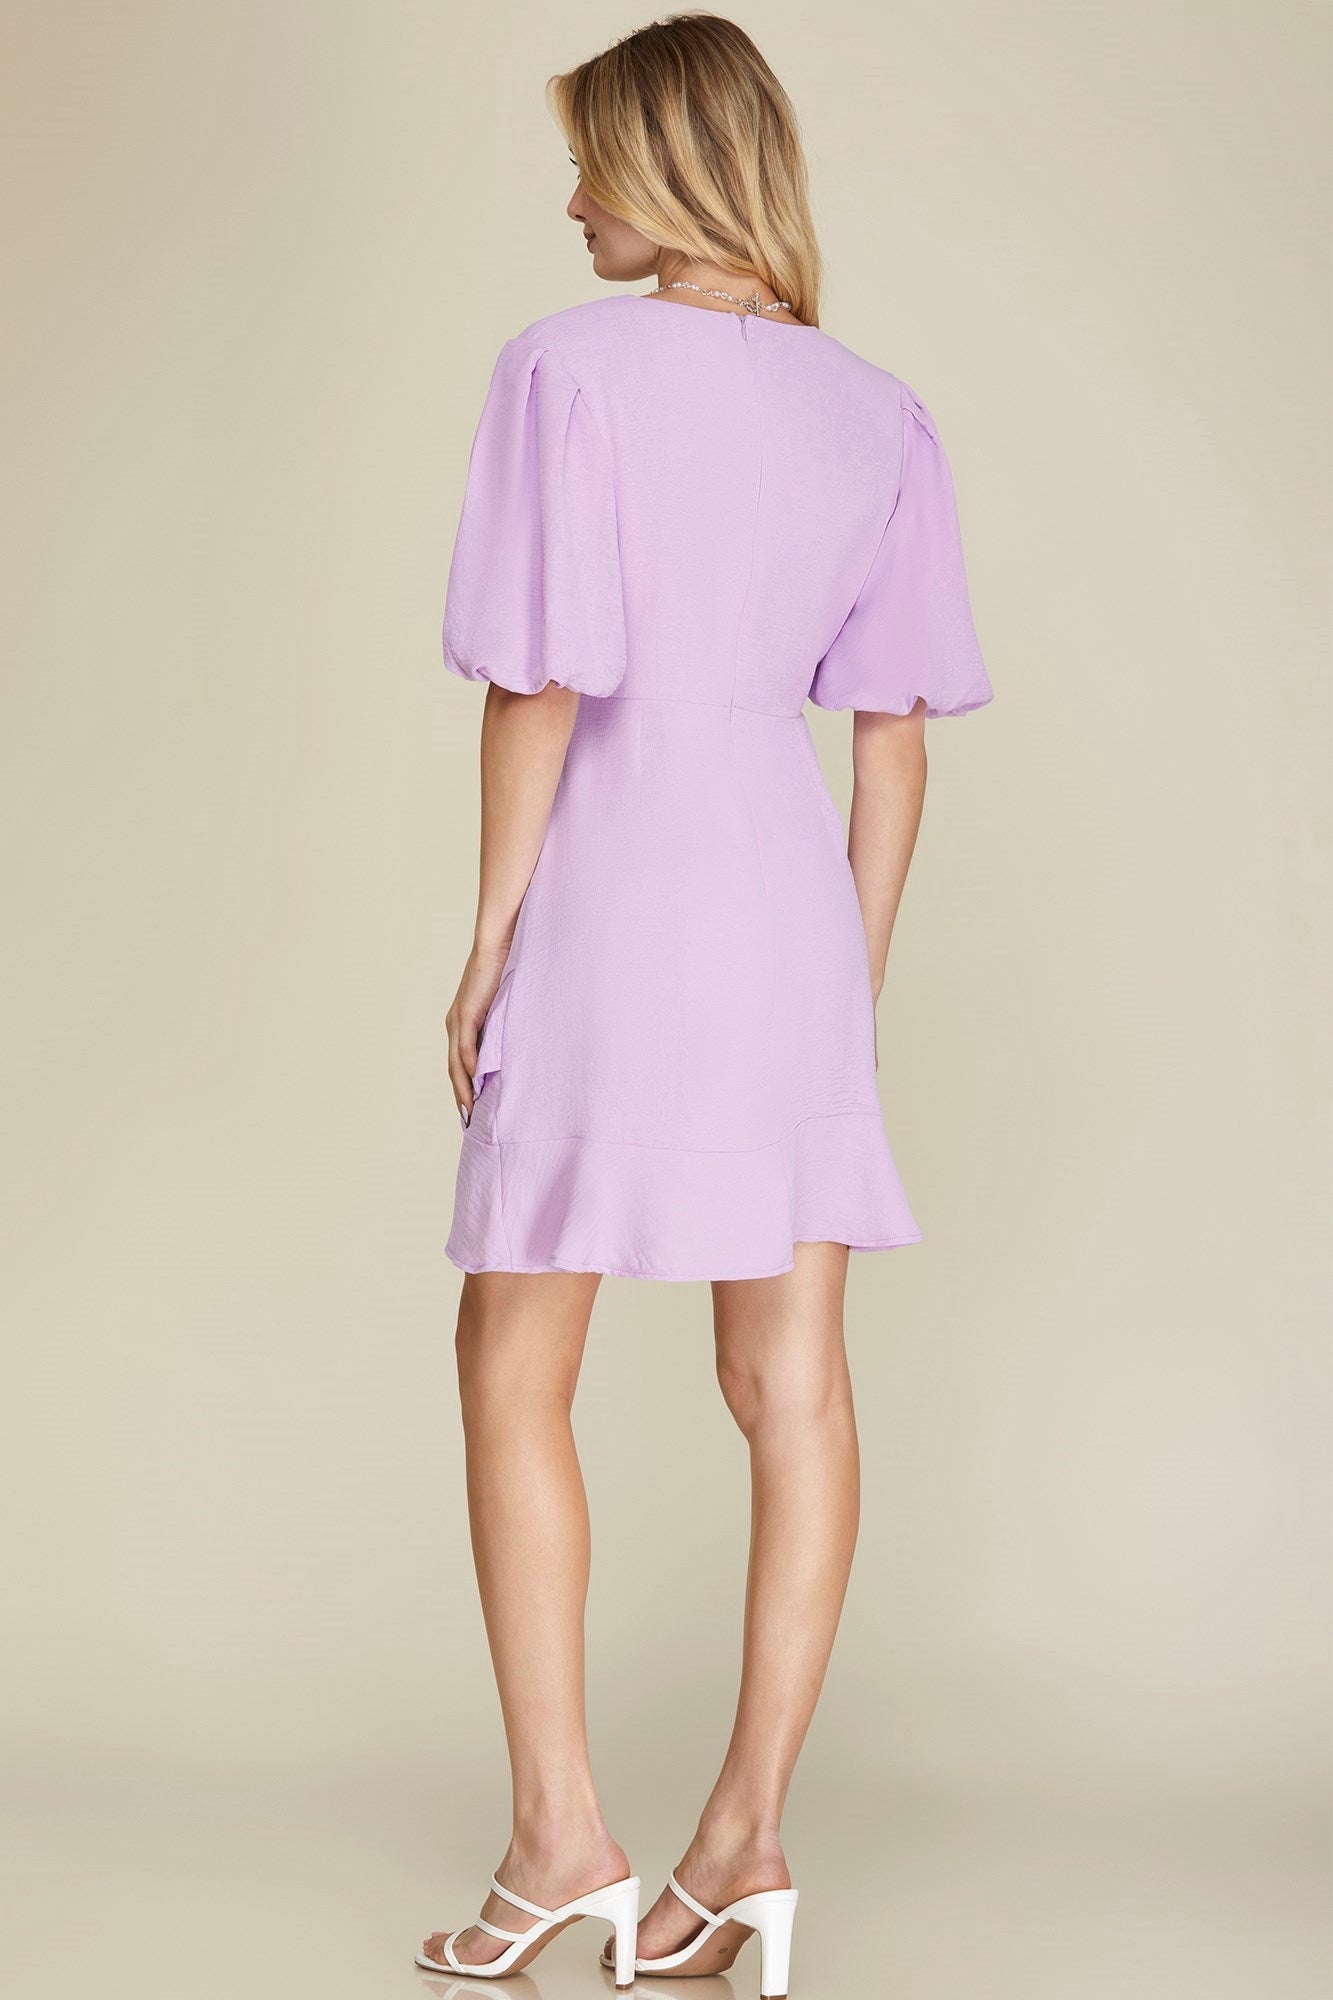 Bayleigh Dress Lavender